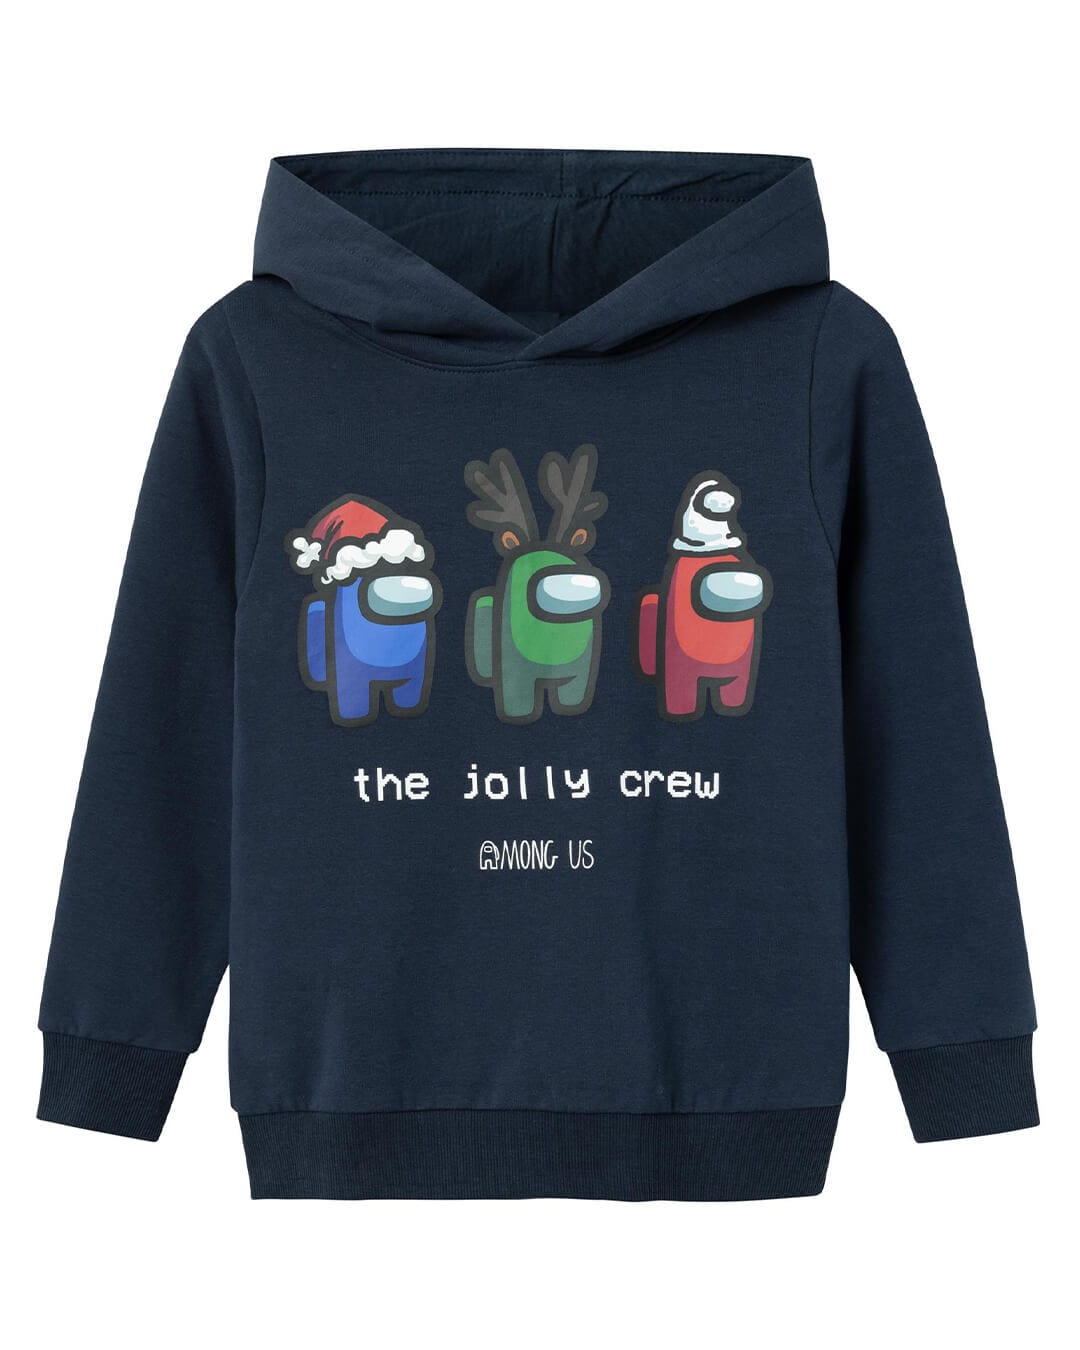 Name It Jumpers Name It Christmas Among Us Navy Sweatshirt